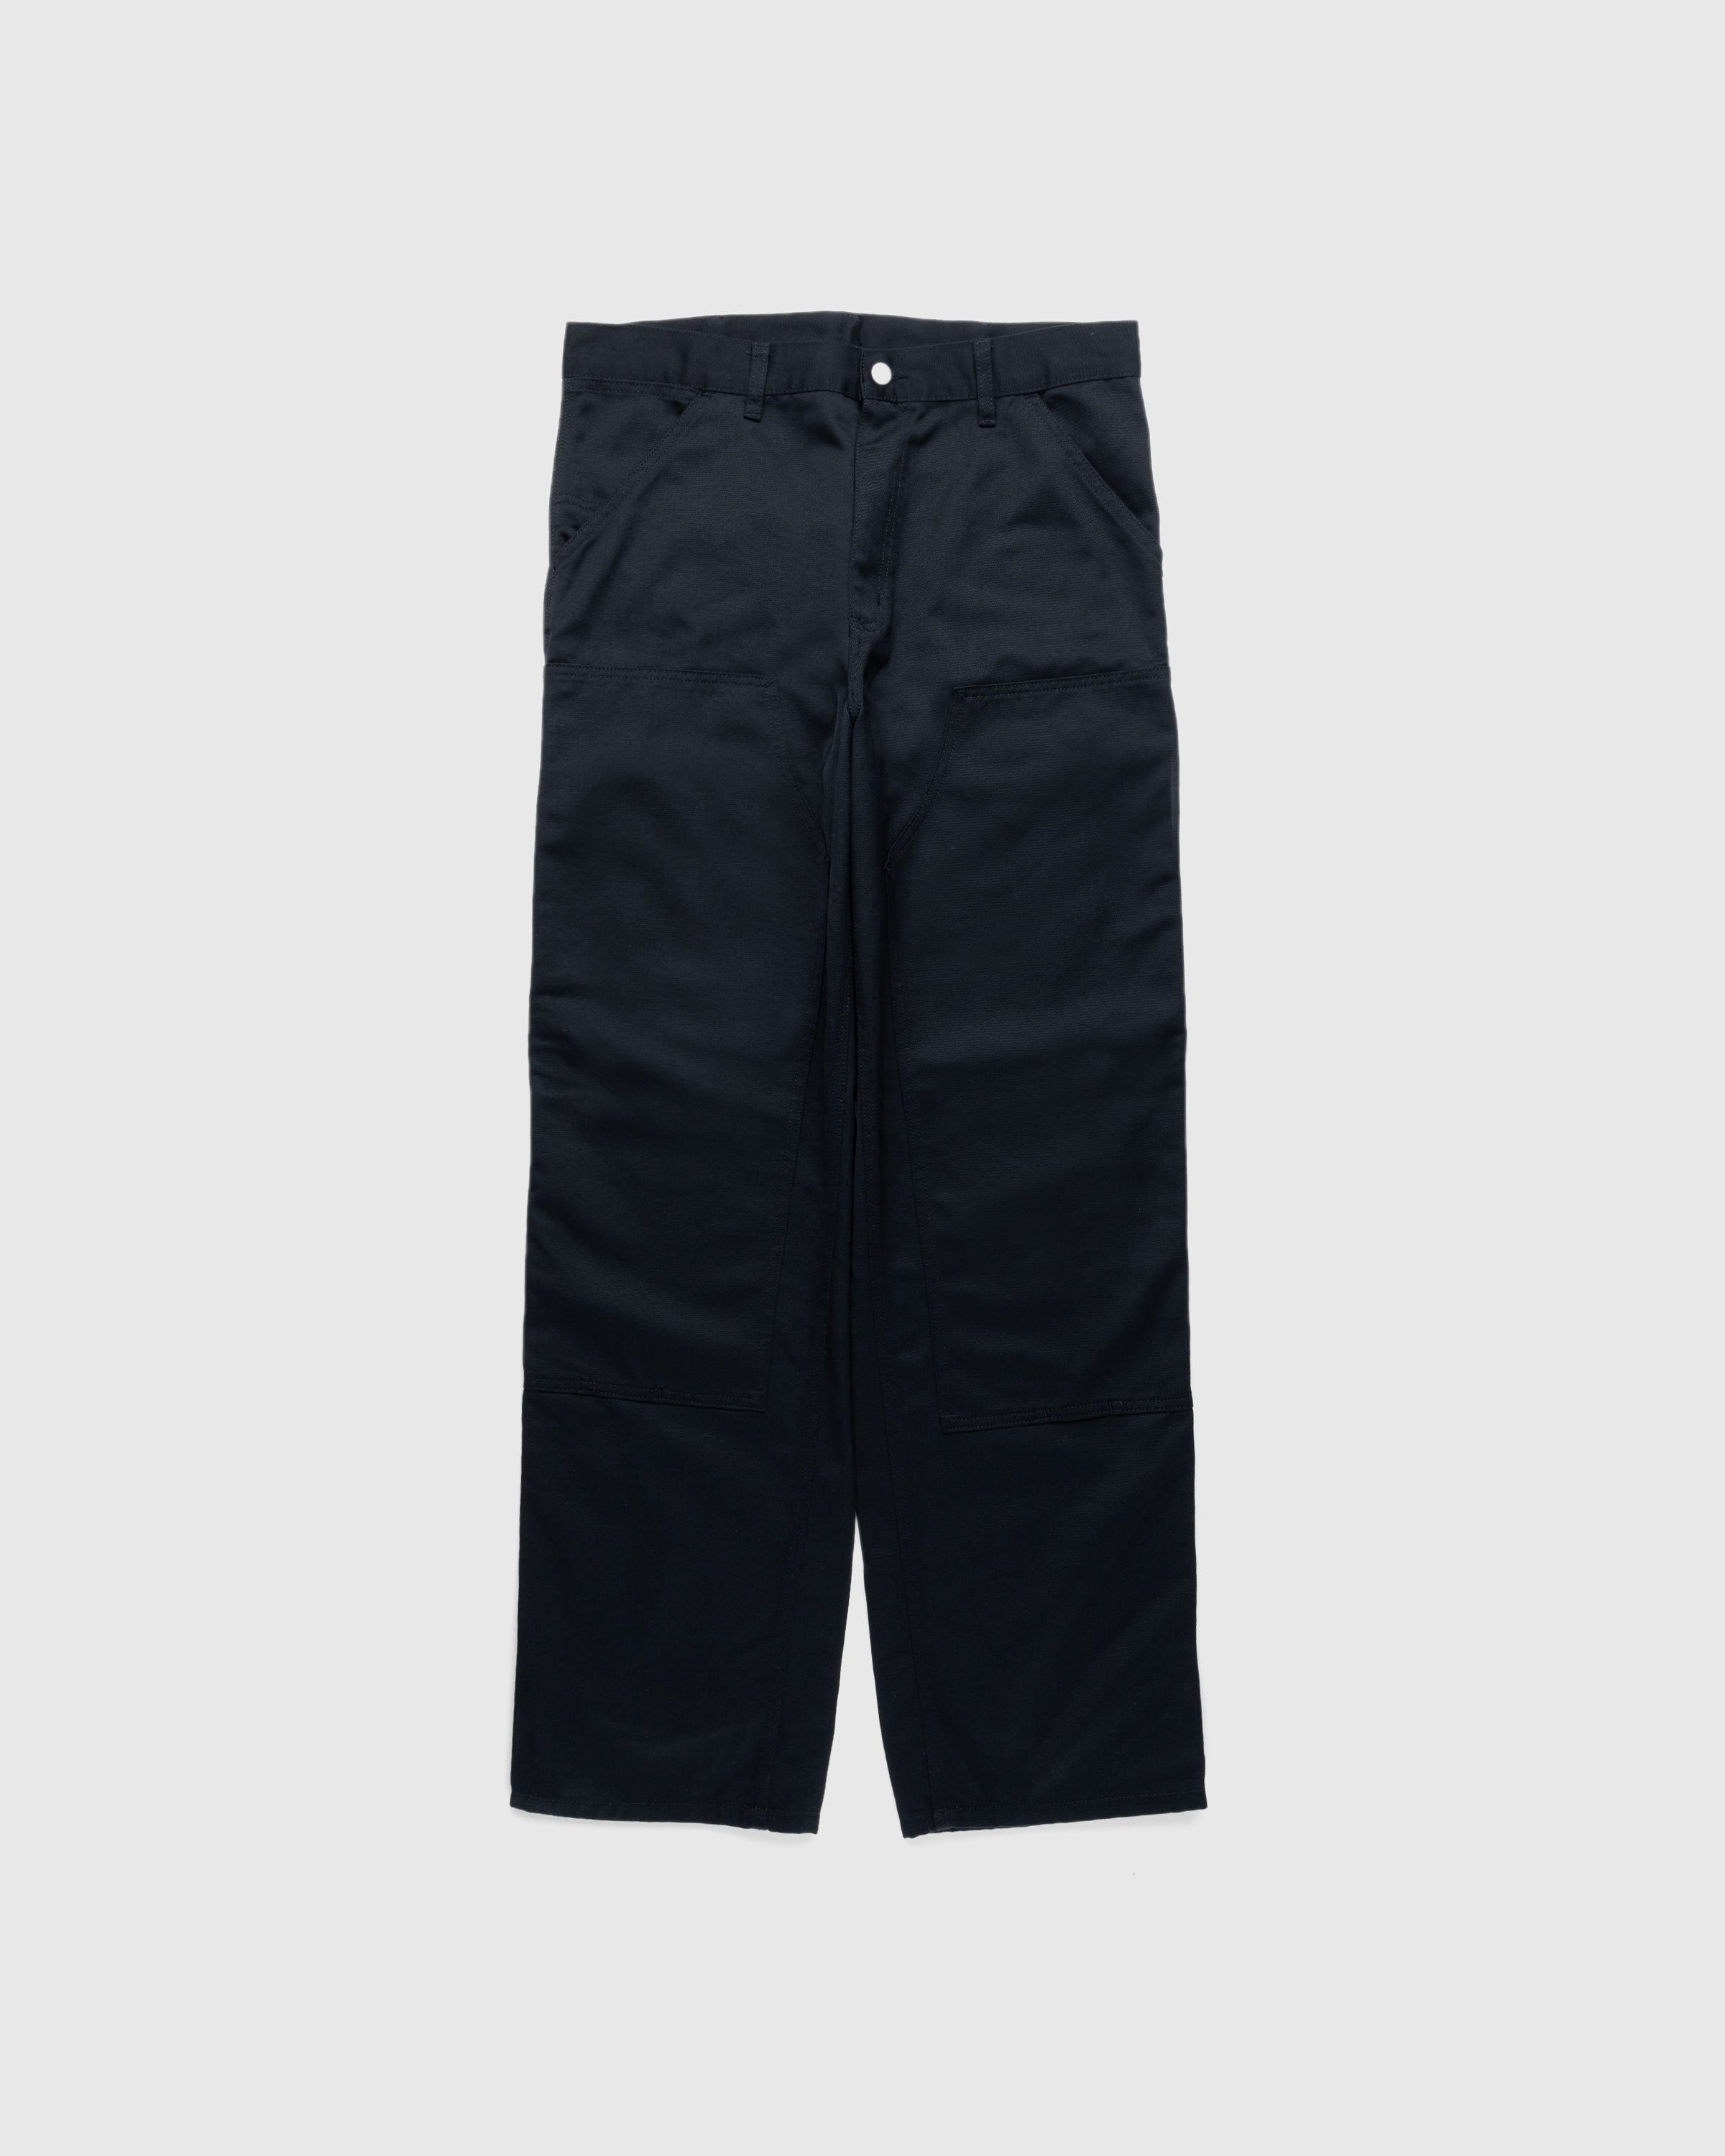 Carhartt WIP - Double Knee Pant Black /rinsed - Clothing - Black - Image 1